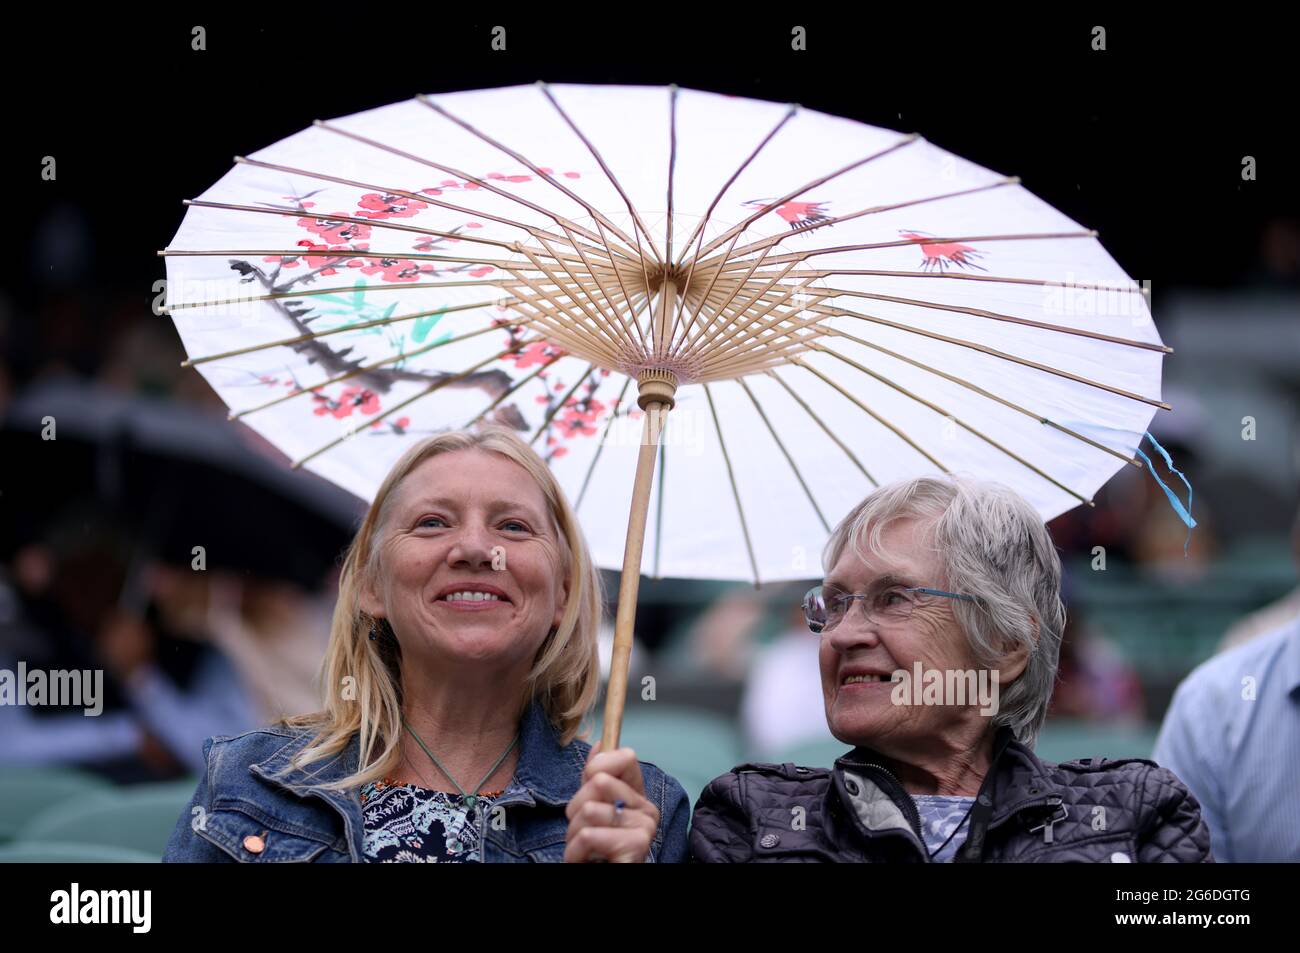 Gli Specatatori usano un ombrello ornato sul campo 1 il giorno 7 di Wimbledon all'All England Lawn Tennis and Croquet Club, Wimbledon. Data immagine: Lunedì 5 luglio 2021. Foto Stock